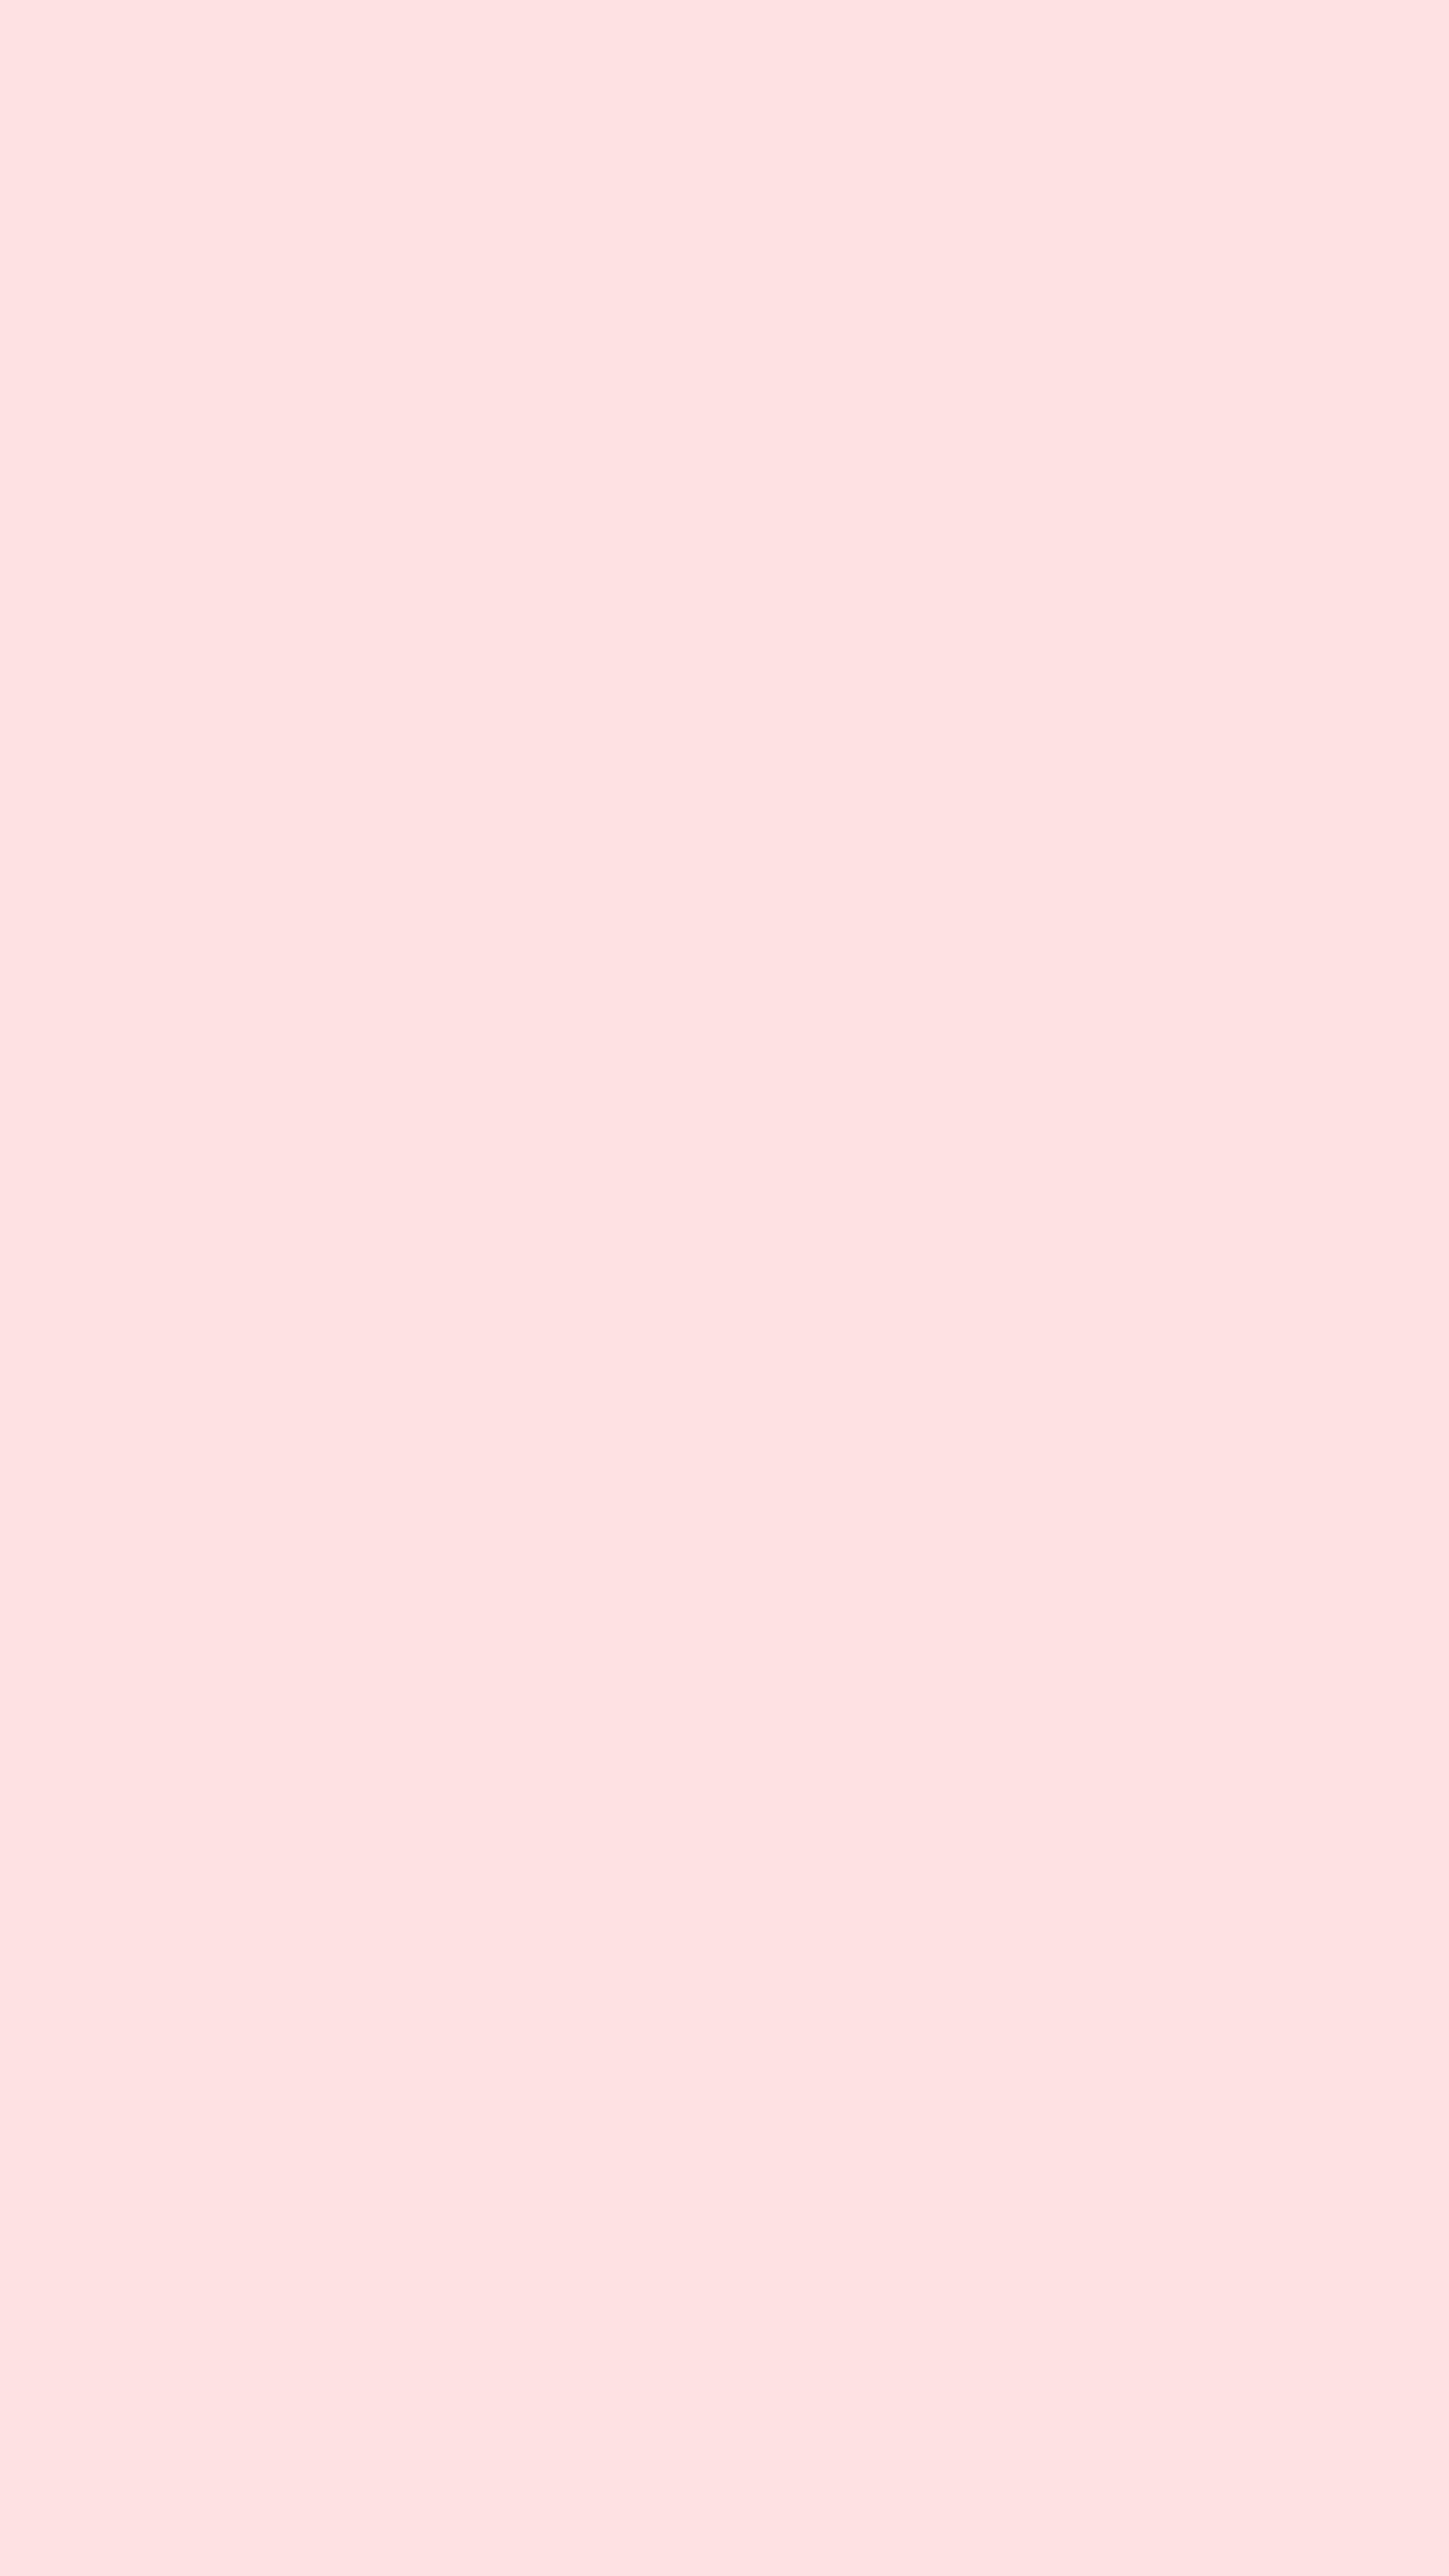 Bright Pink Color Block Fondo de pantalla[6a3347ad4a50427ba000]